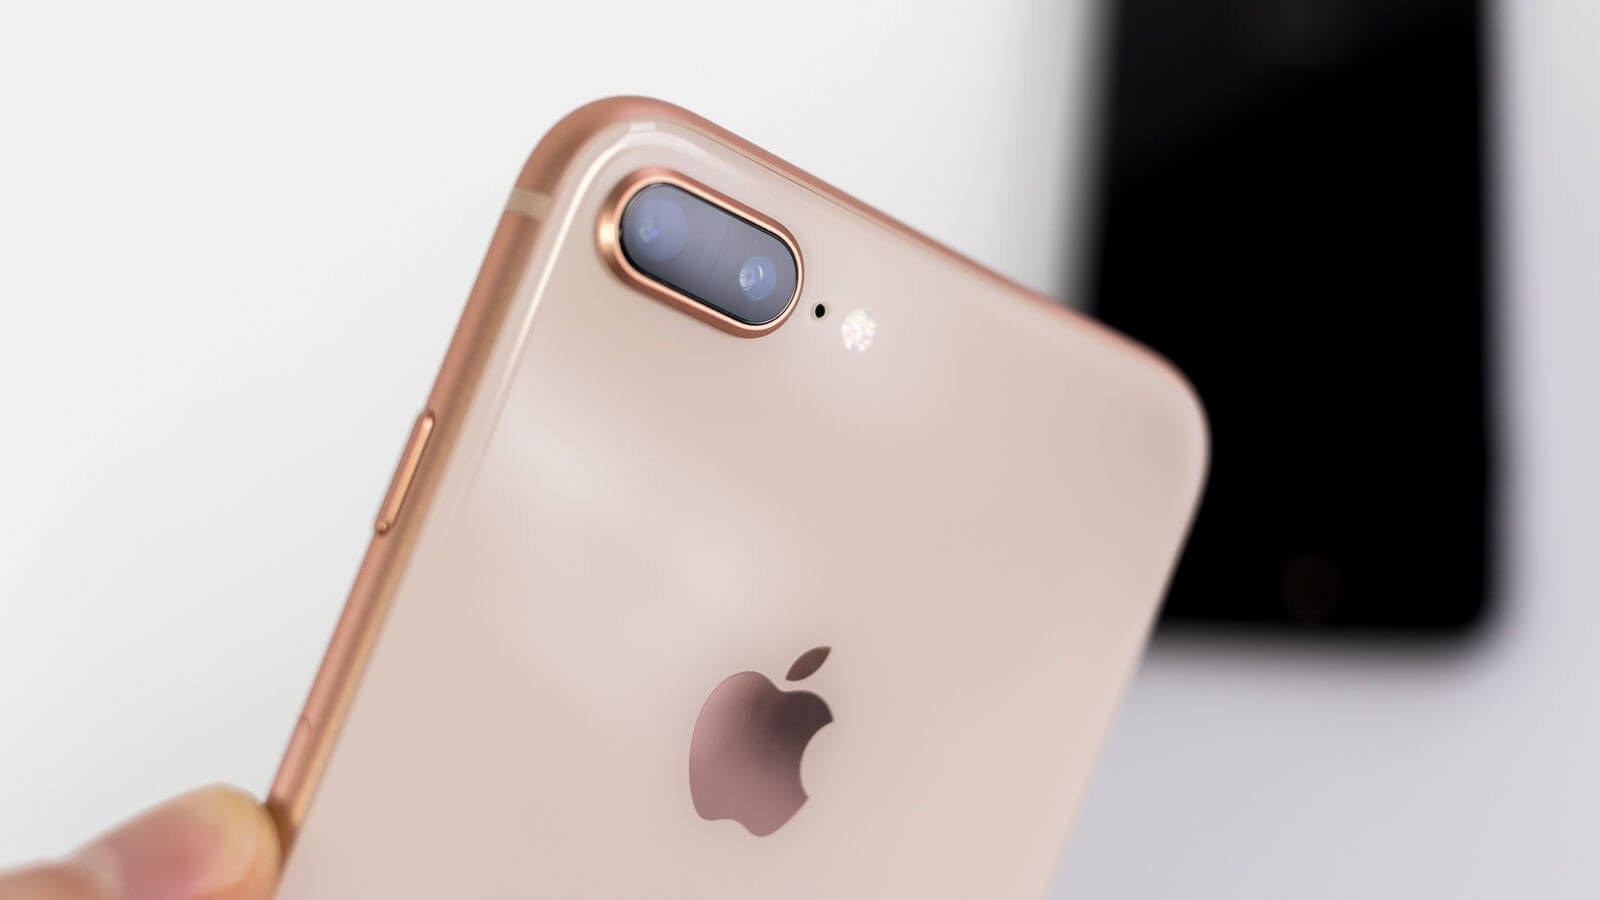 Apple souhaite optimiser l’expérience avec les boutons des iPhone protégés par des coques